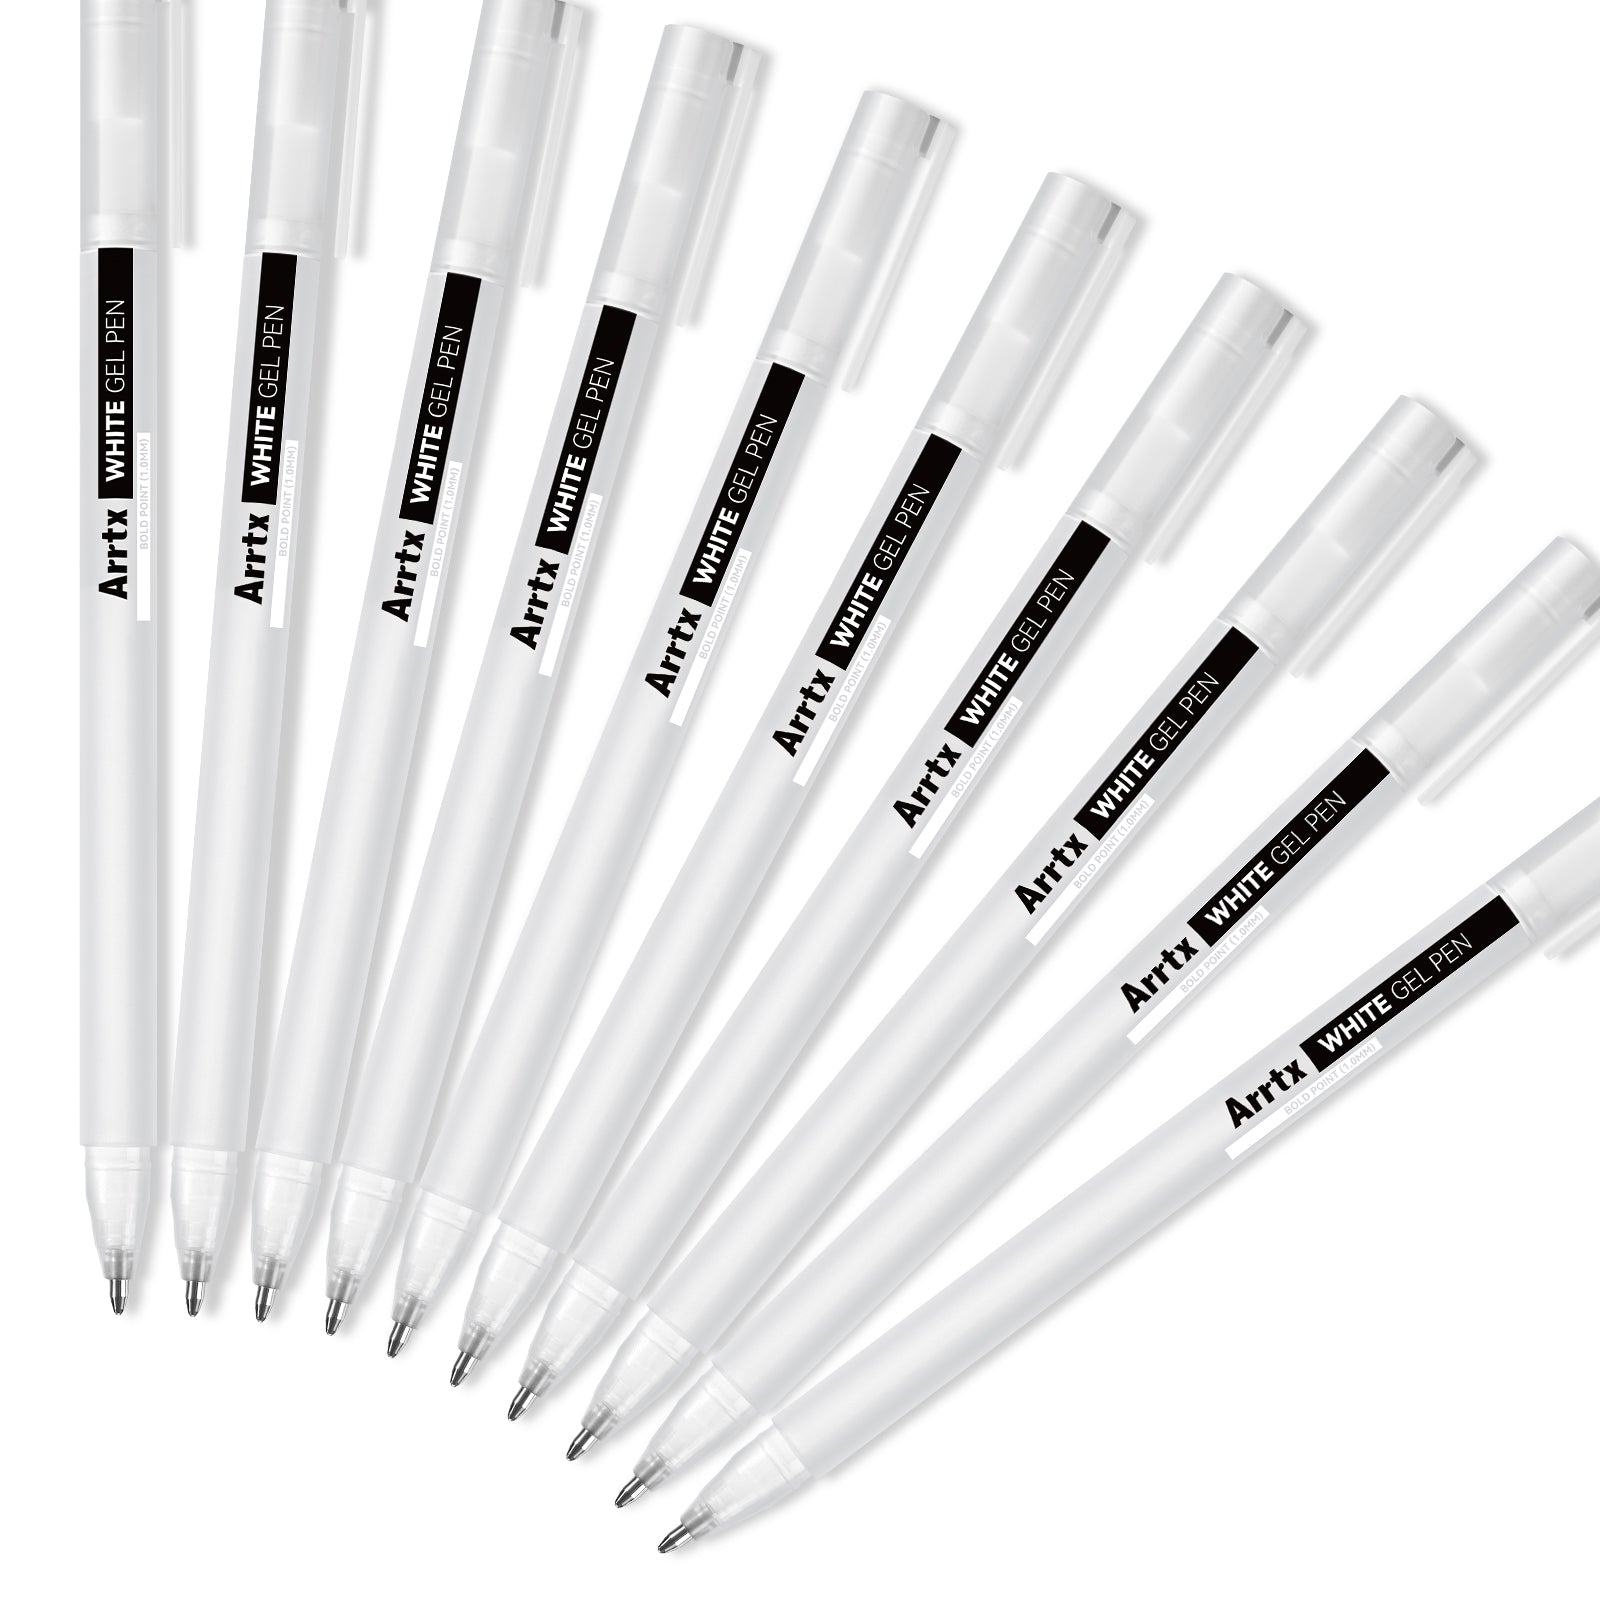 Arrtx Gelstifte, 10 Stück, weiße Farbe, Tintenstifte mit großer Kapazität